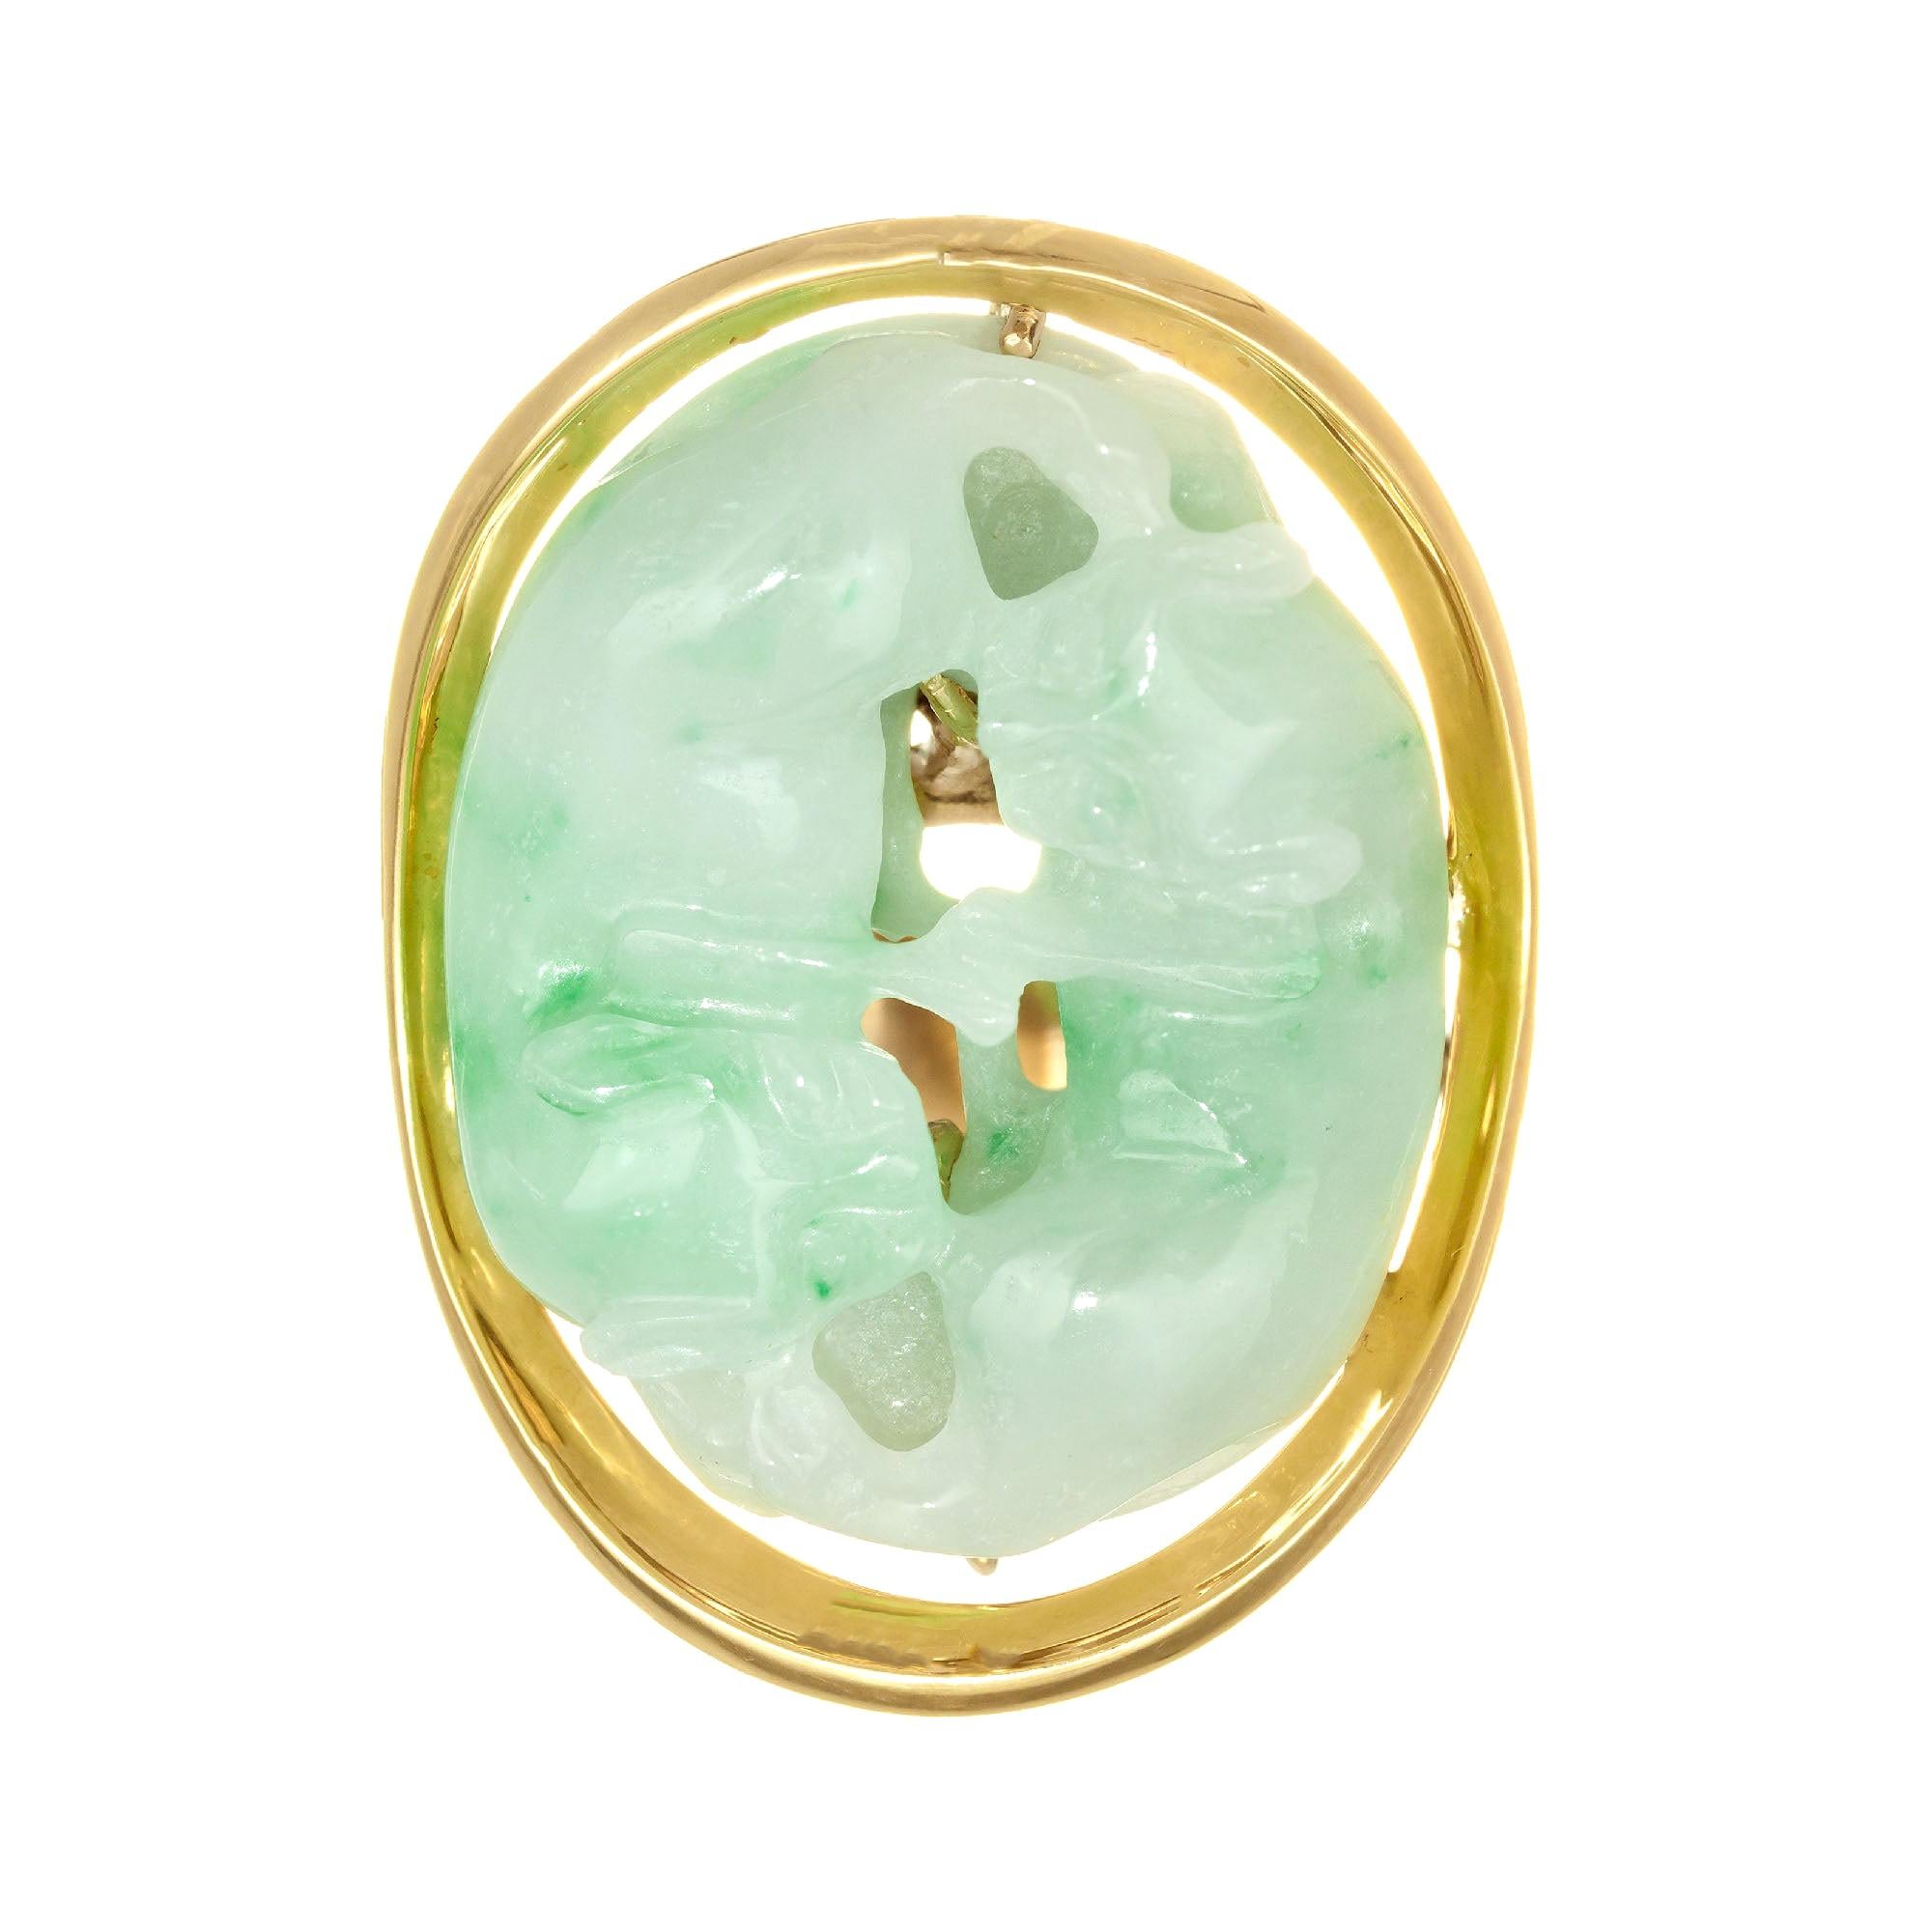 Bague cocktail en forme de chat sculptée en or jaune, jade et jadéite, certifiée par le GIA